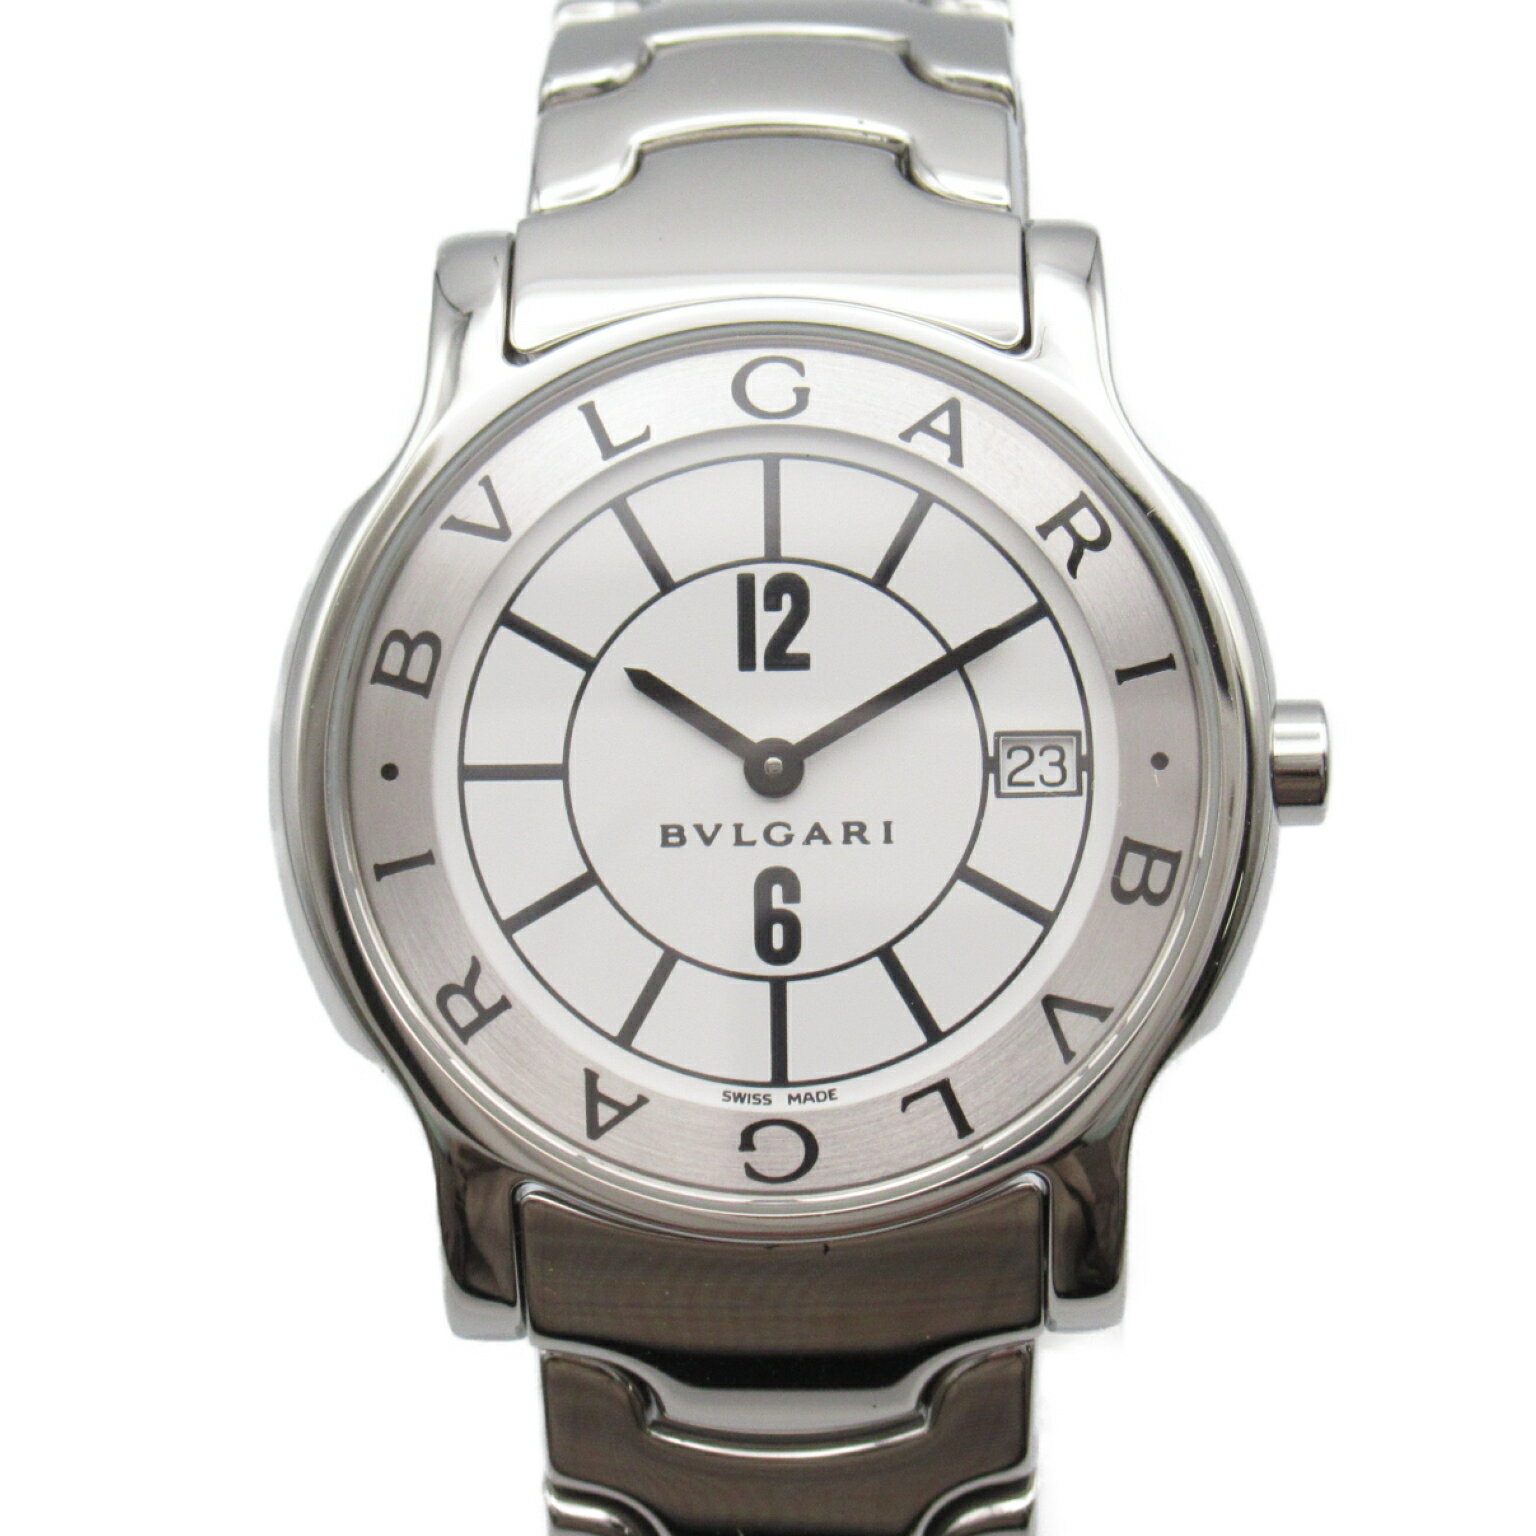 ブルガリ BVLGARI ソロテンポ 腕時計 時計 ステンレススチール メンズ レディース ホワイト系 ST35S 【中古】